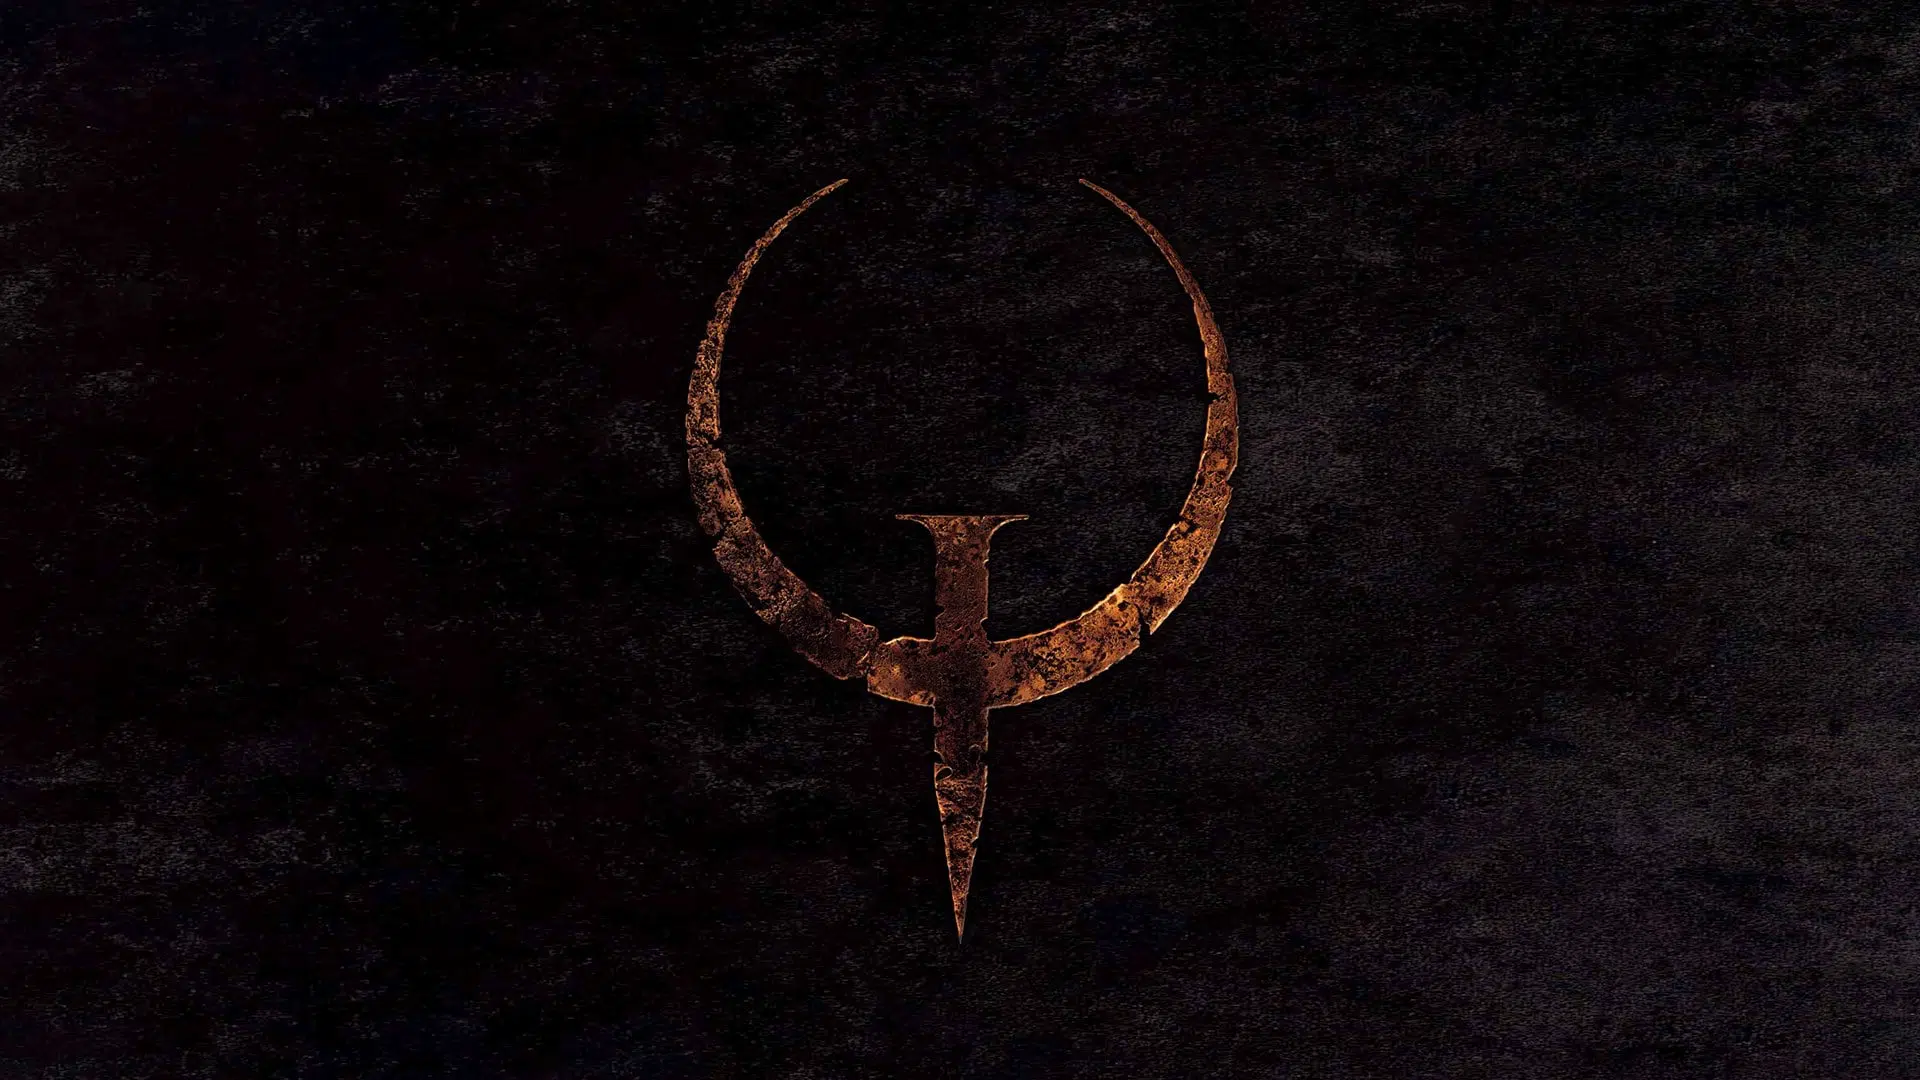 Quake Update 1.05